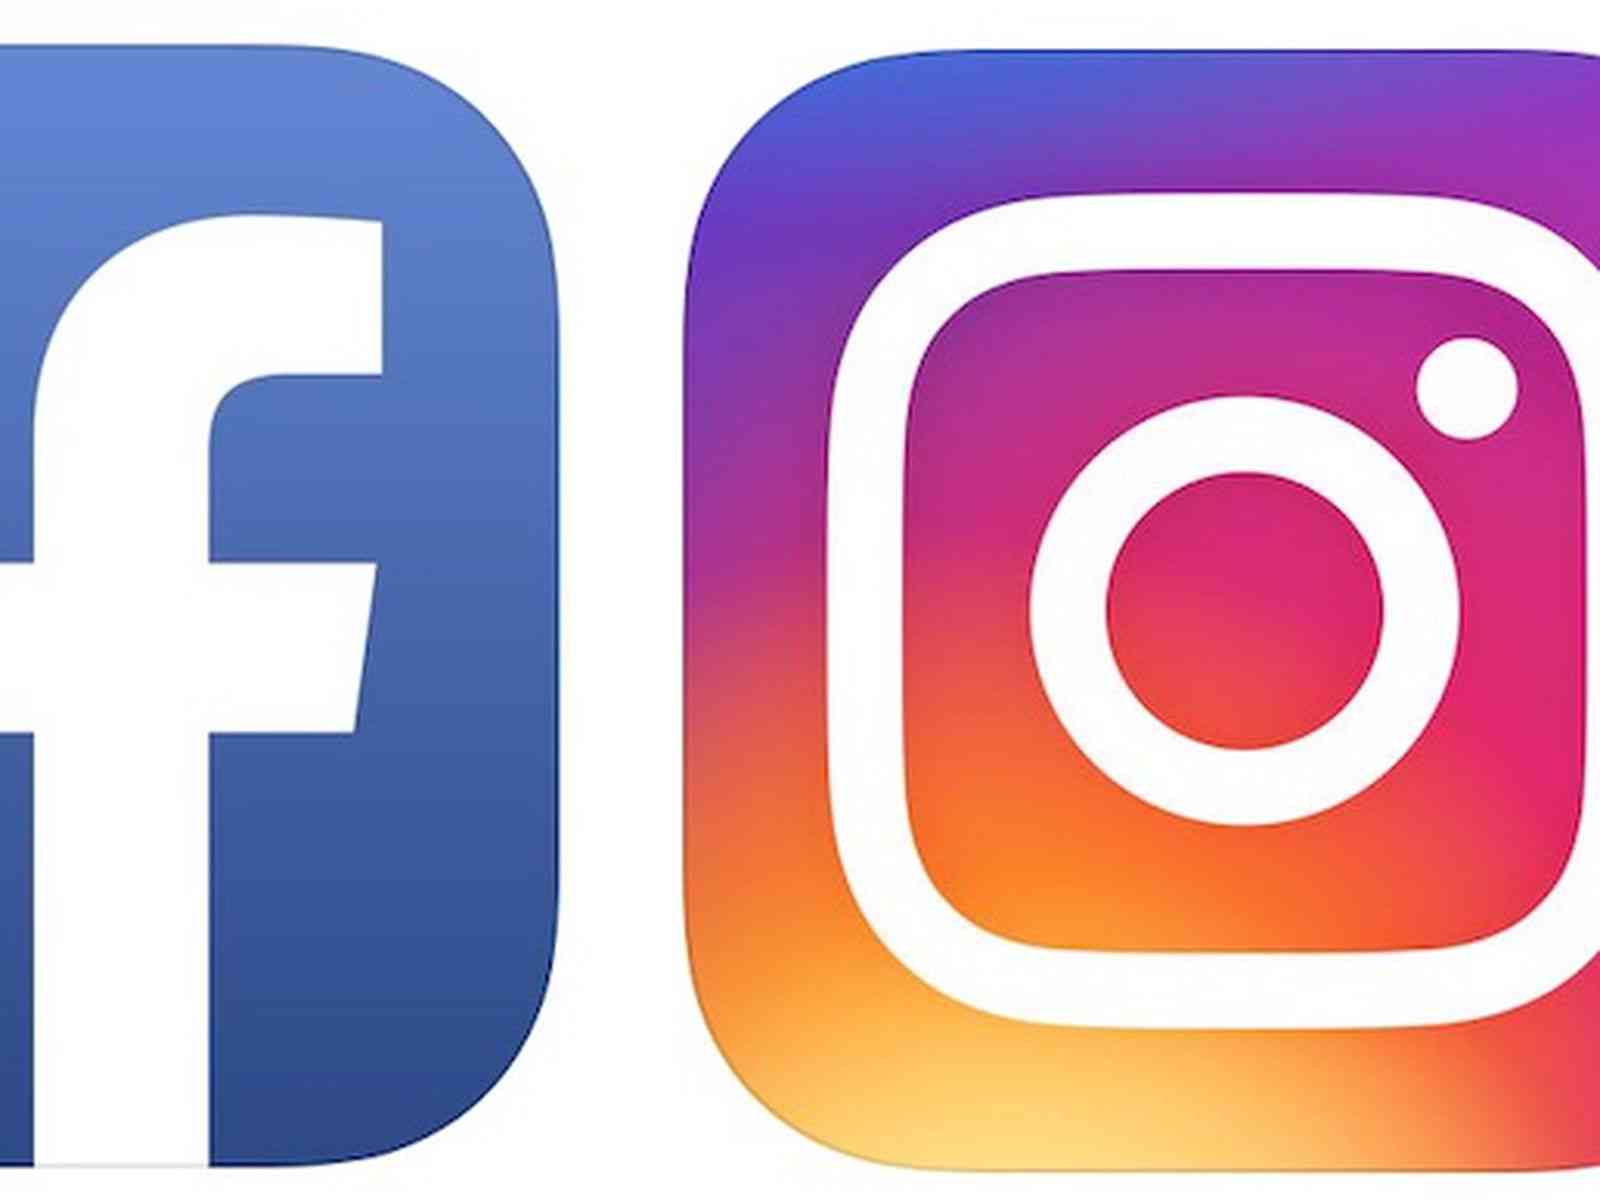 فیسبوک و اینستاگرام دو پلتفرم پرطرفدار برای کاربران و بازاریاب ها